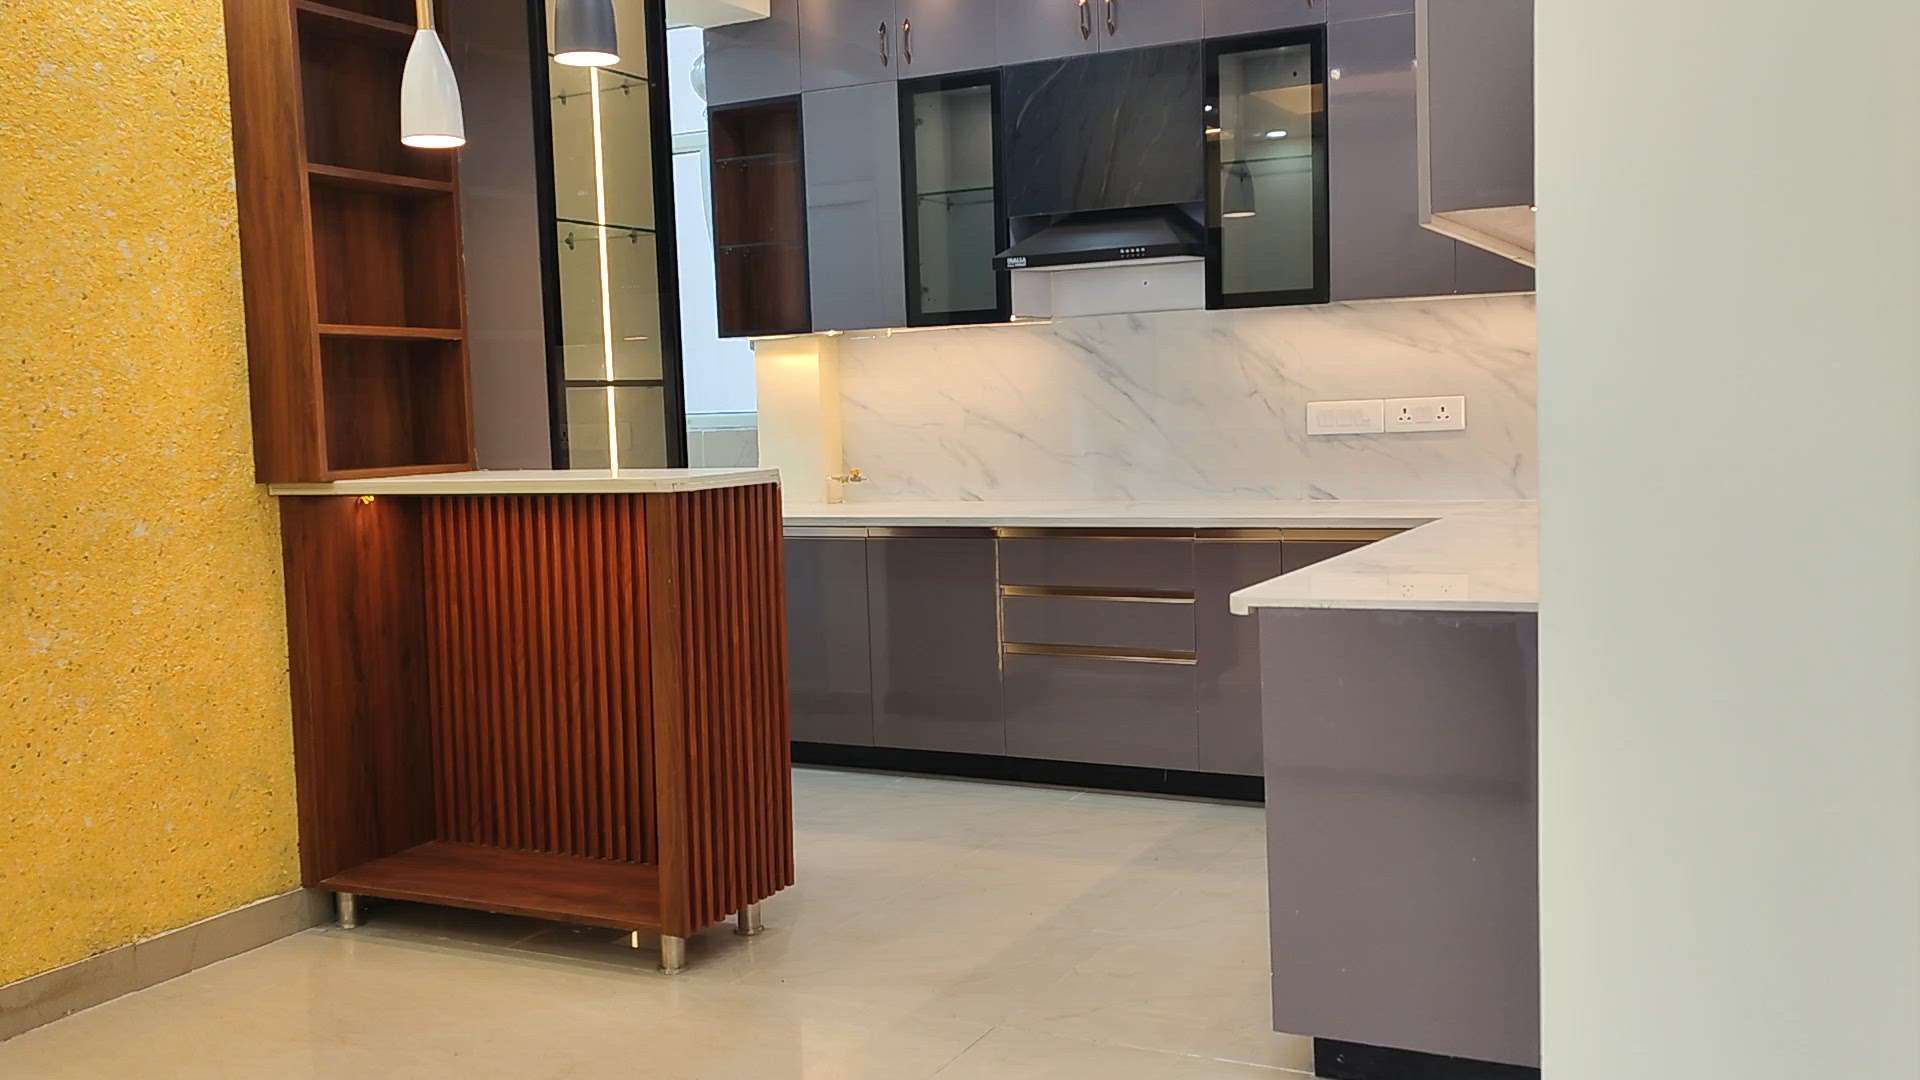 Best Modular kitchen design ❤️

#ModularKitchen  #Almirah